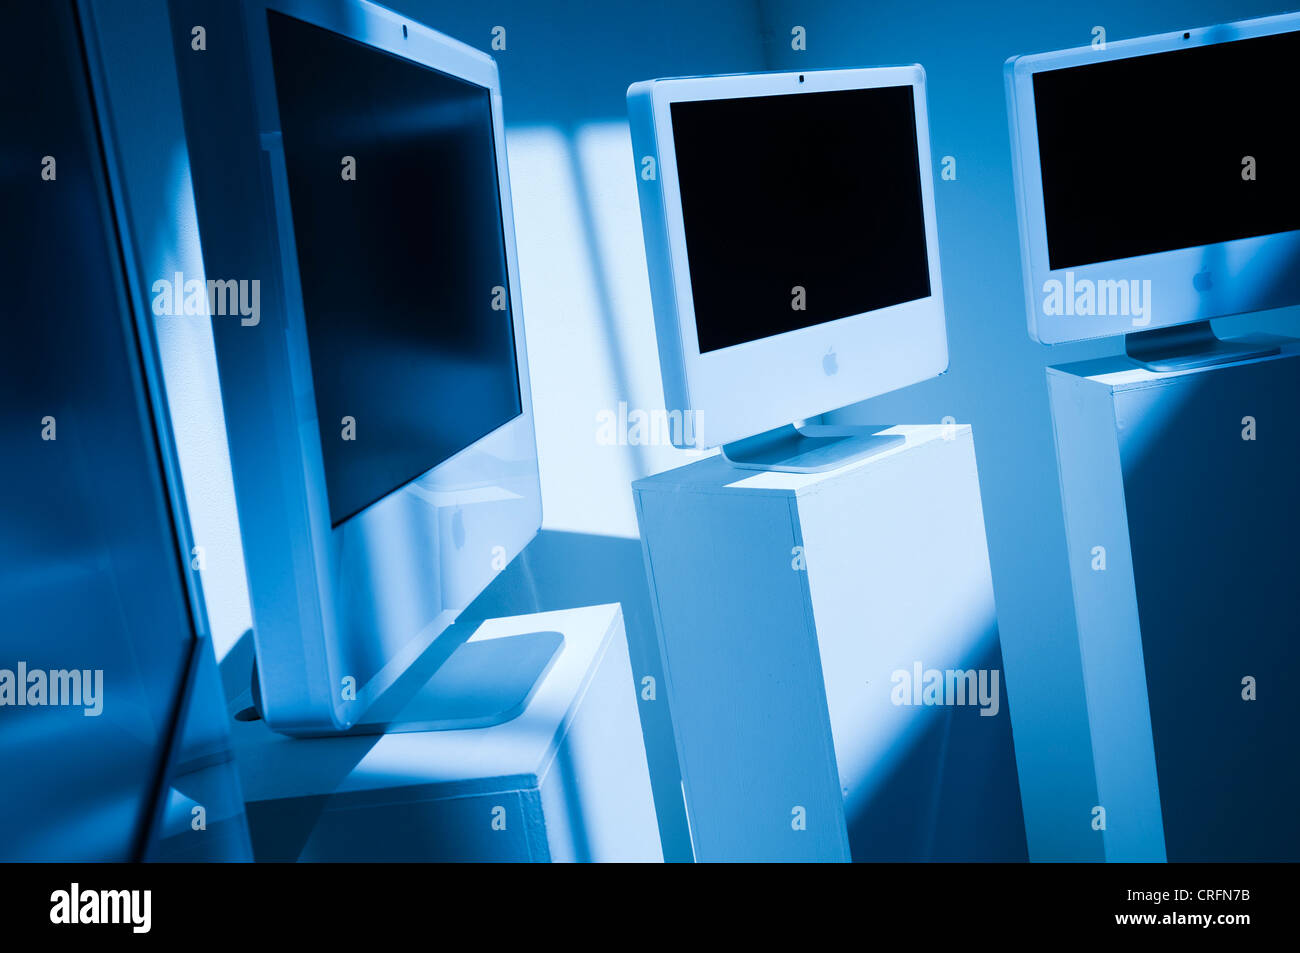 Un freddo nei toni del blu immagine di un gruppo di iconico bianco apple computer iMac su piedistalli in un art gallery REGNO UNITO Foto Stock